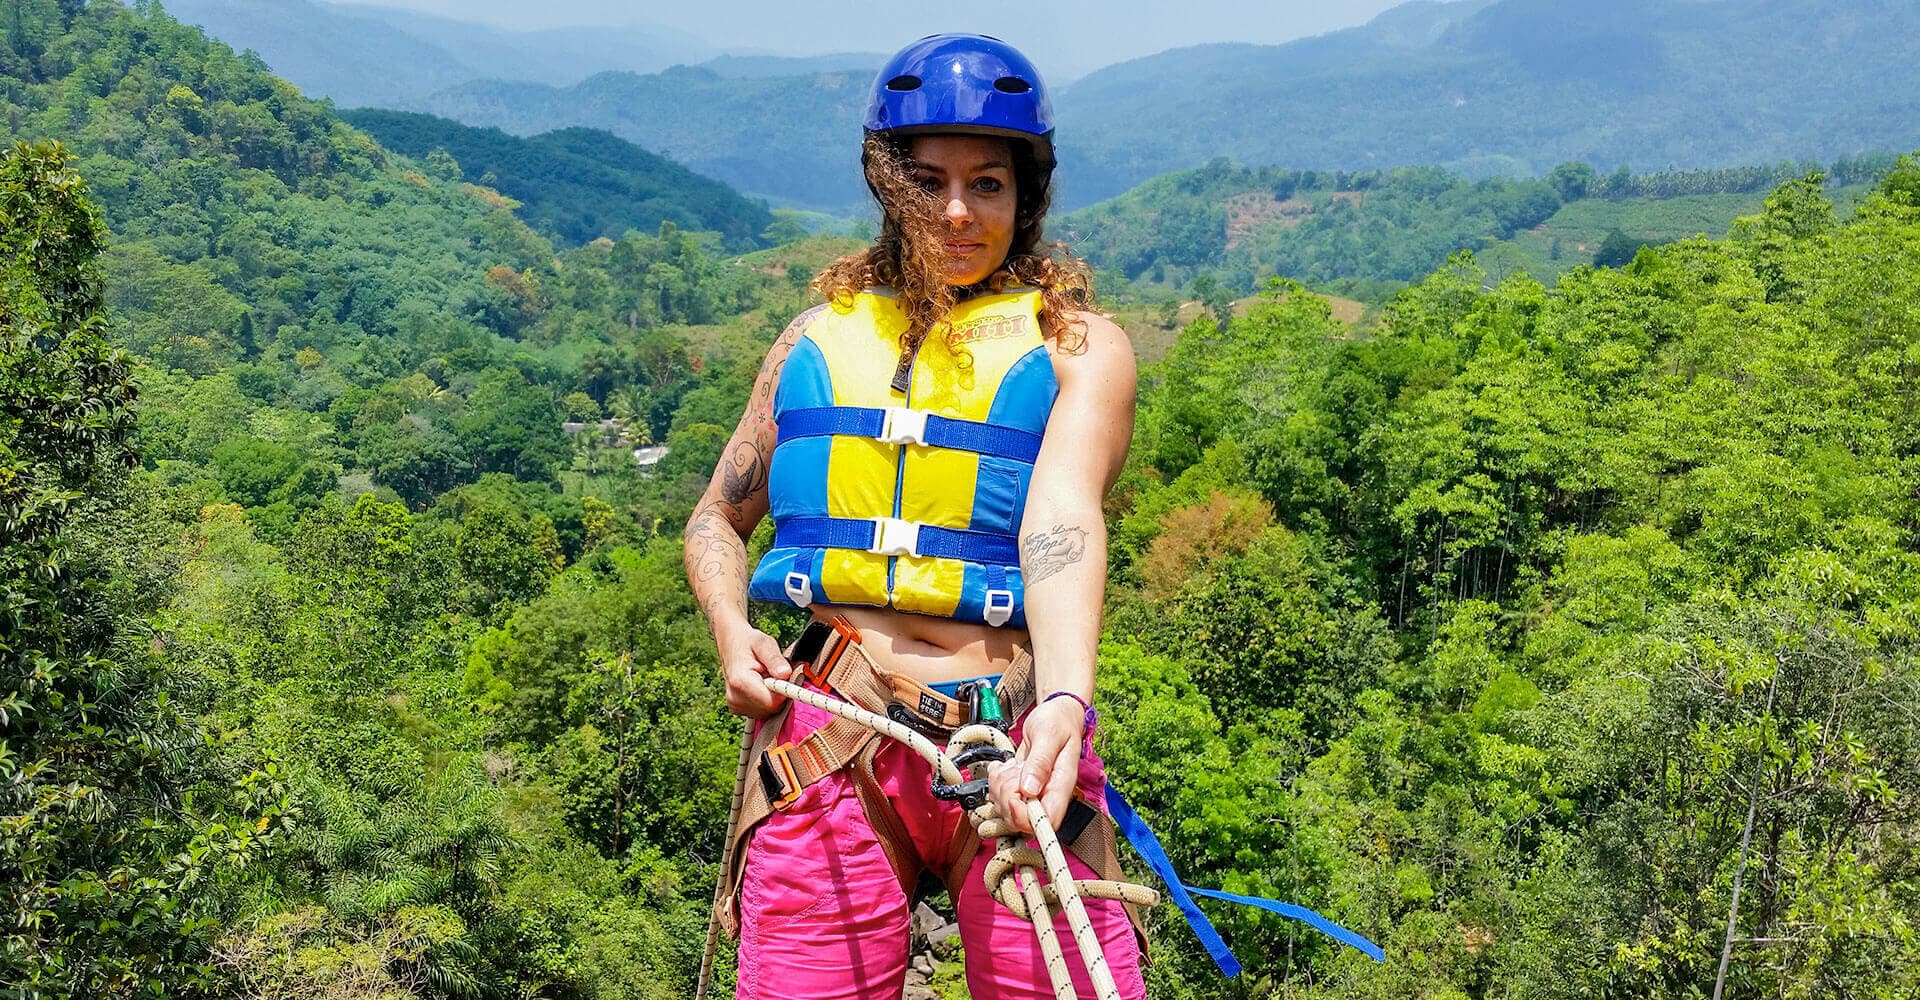 فتاة تقوم بالمغامرة الشيقة المتمثلة في الهبوط من قمم الجبال في التخييم في كيتولغالا بسريلانكا